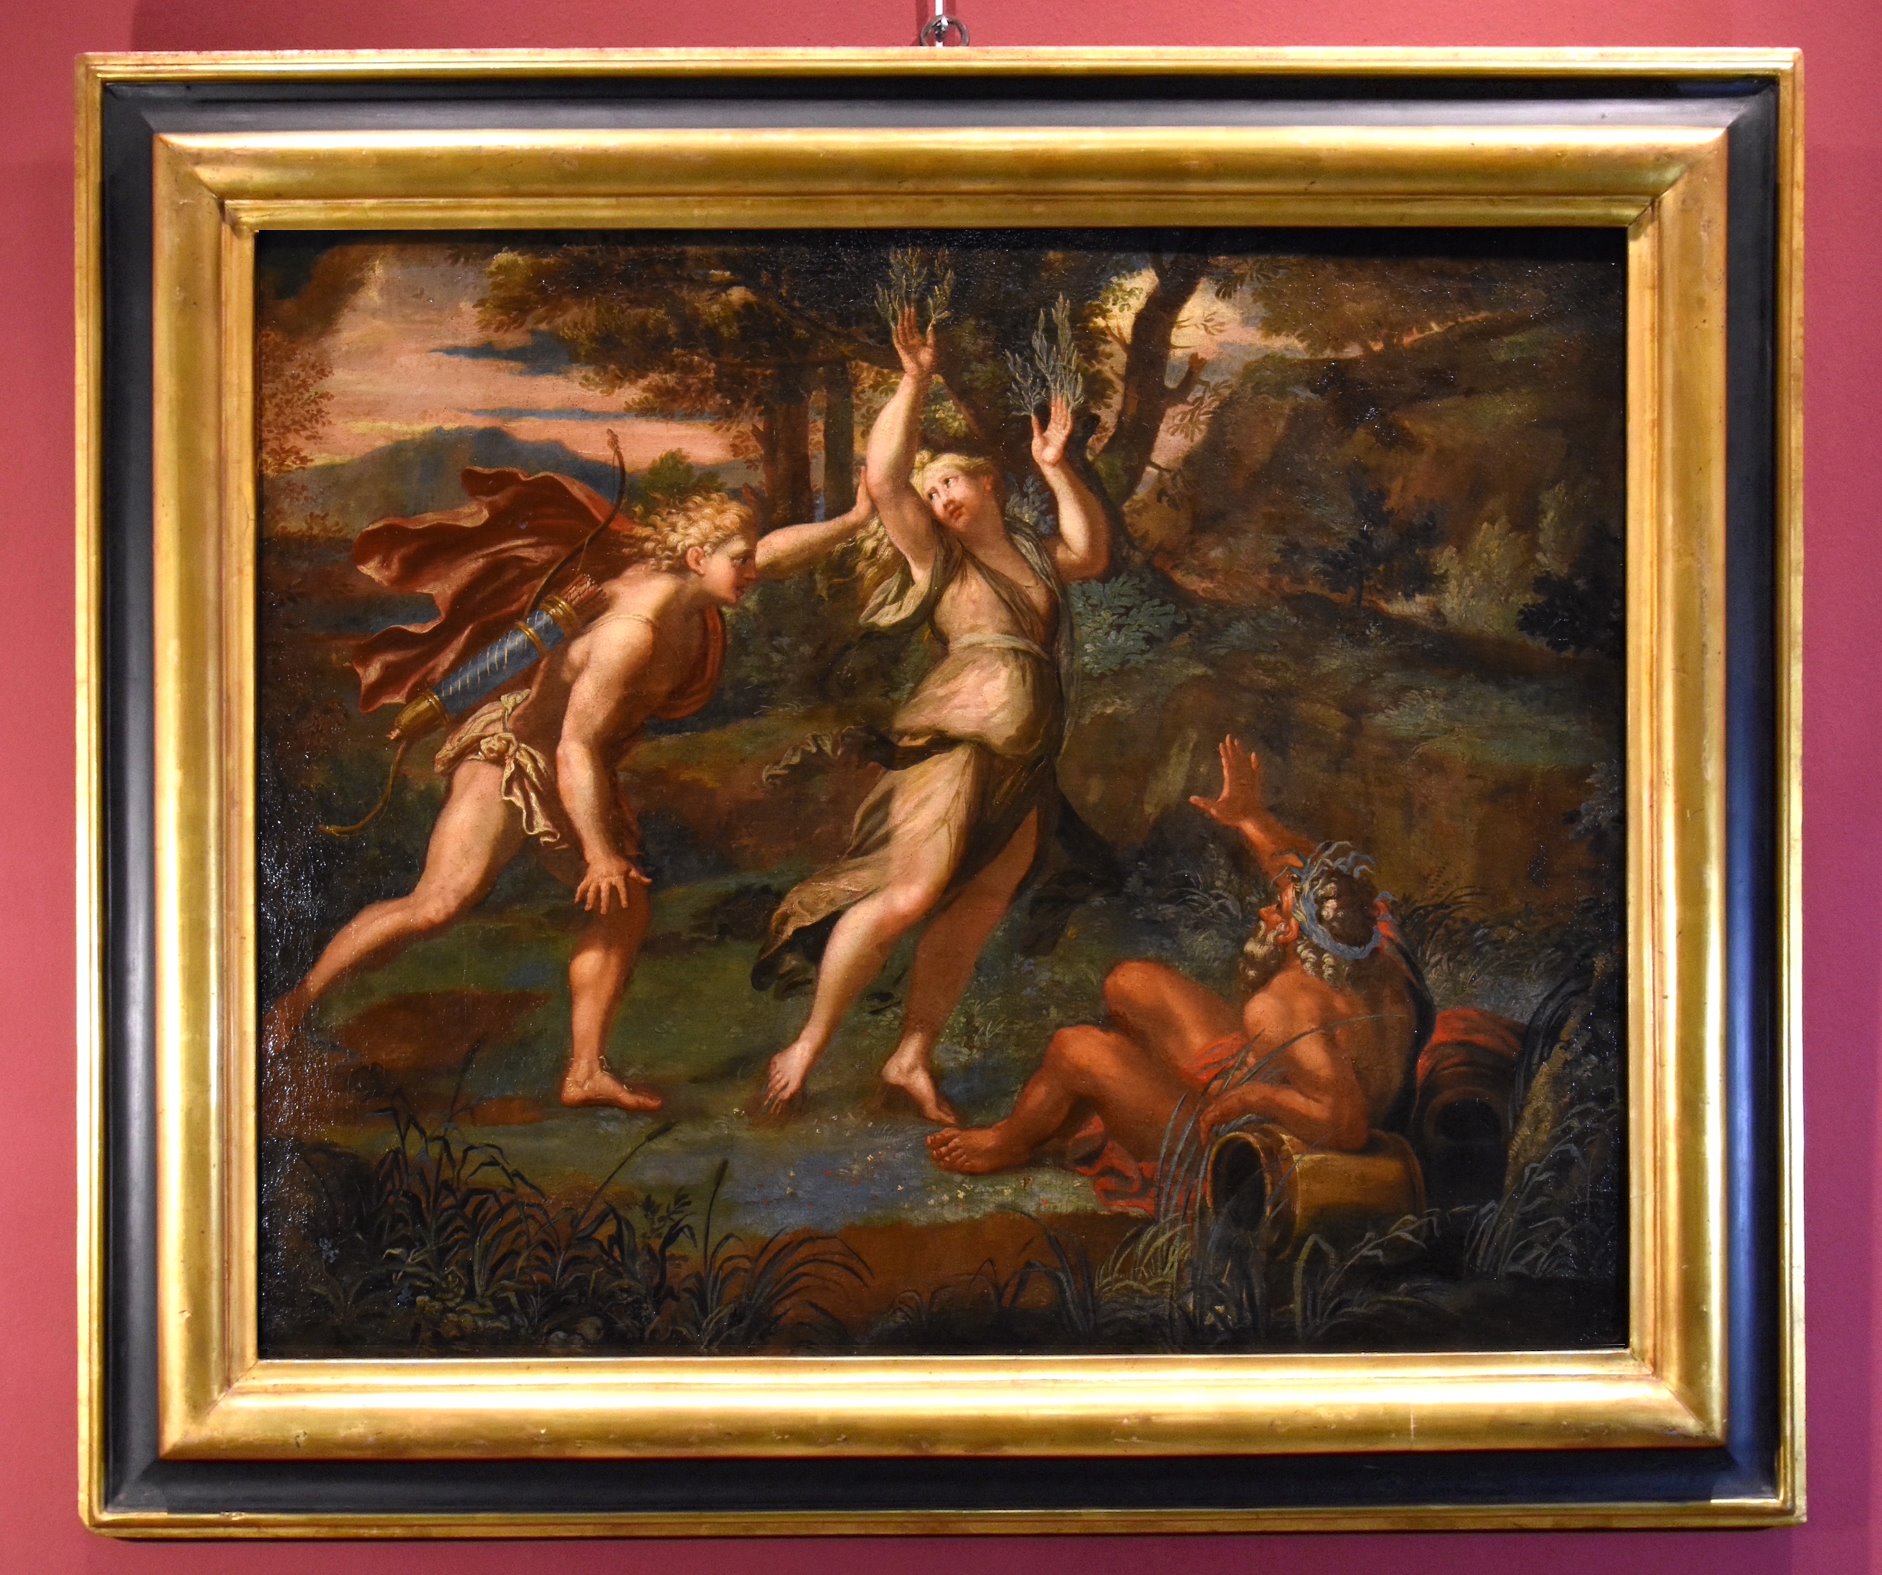 Il mito di Apollo e Dafne